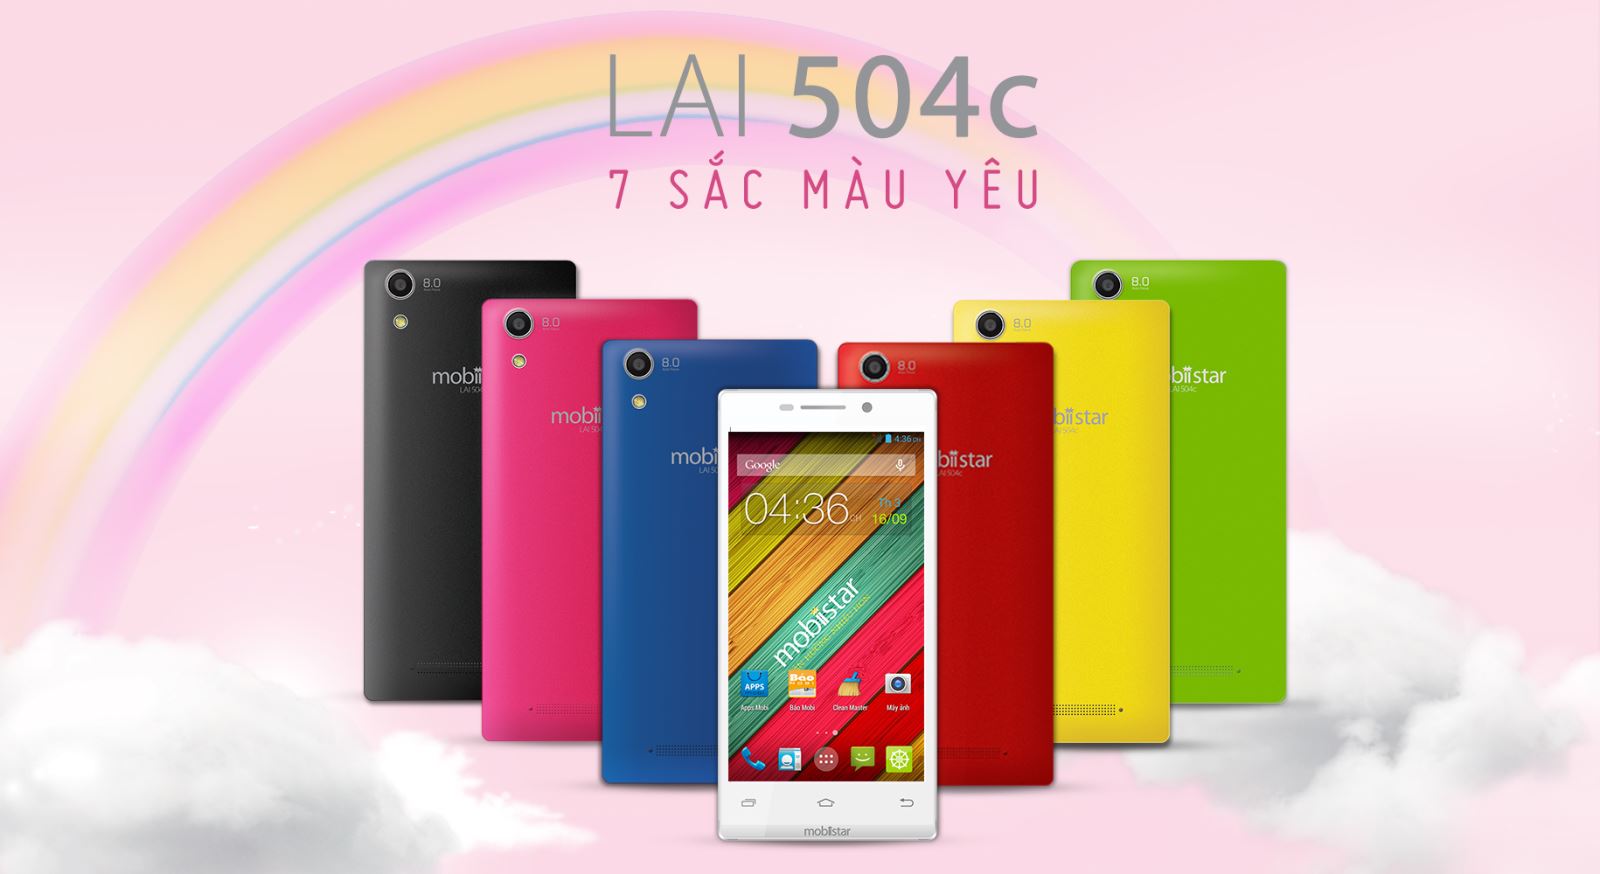 Smartphone giá rẻ Mobiistar LAI 504C lại gây ấn tượng với người dùng bởi thiết kế màu sắc bắt mắt